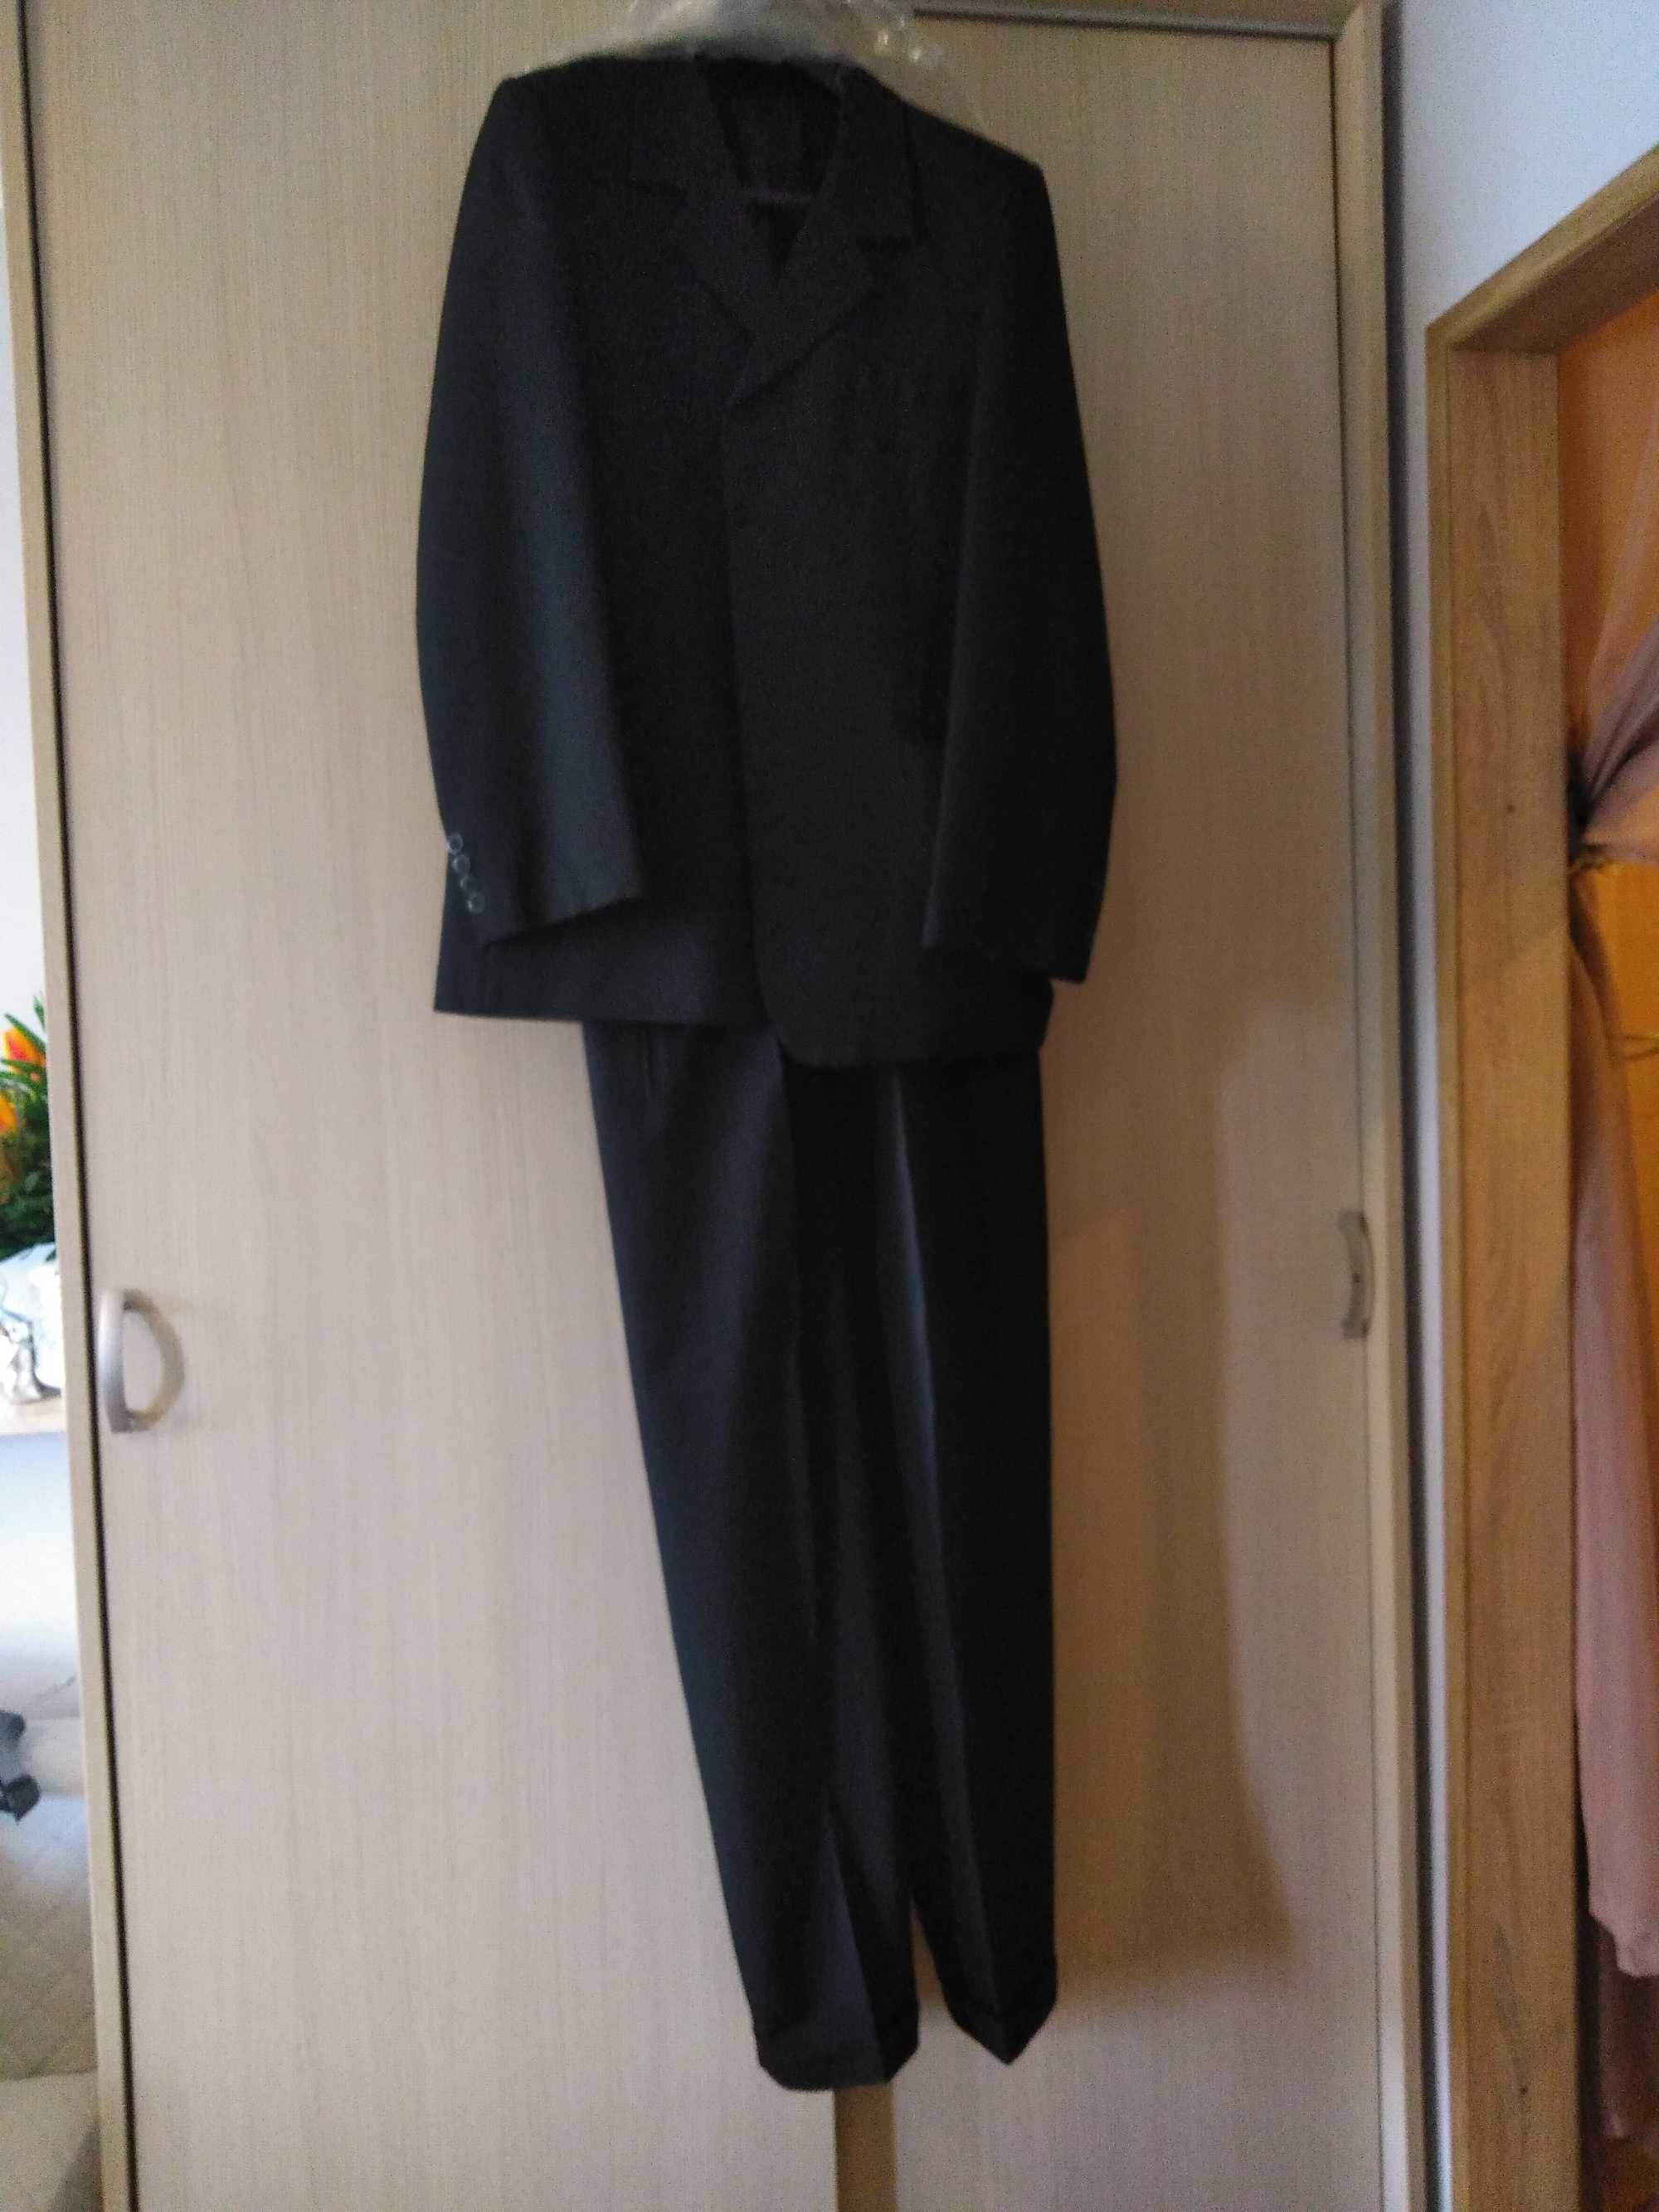 sprzedam ciemny garnitur /roz. 48, wzrost 182 cm/stan idealny.